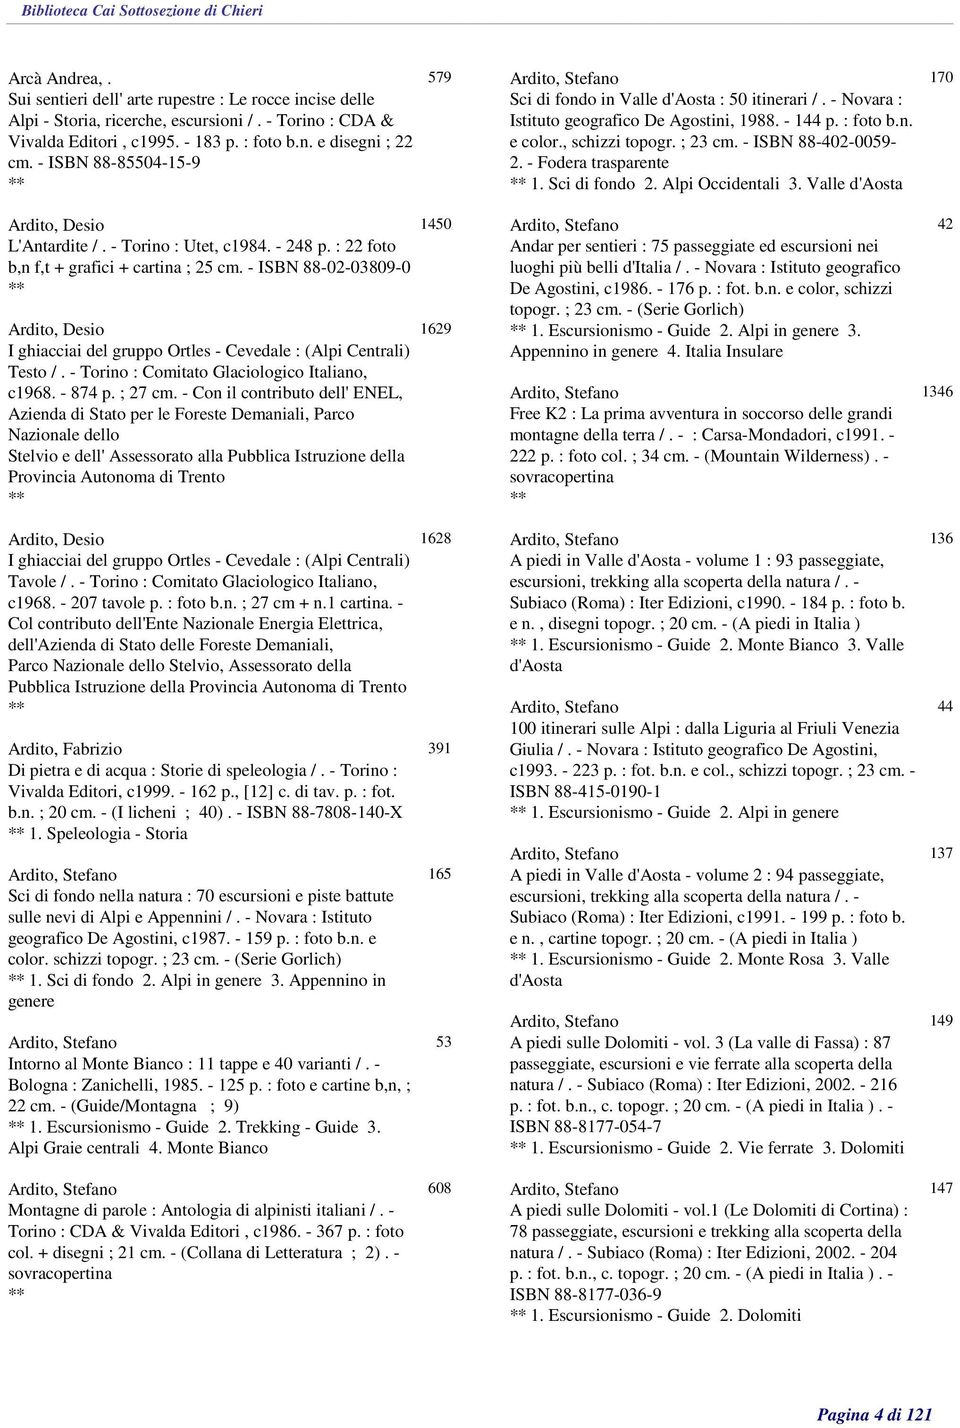 - ISBN 88-402-0059-2. - Fodera trasparente 1. Sci di fondo 2. Alpi Occidentali 3. Valle d'aosta 170 Ardito, Desio L'Antardite /. - Torino : Utet, c1984. - 248 p.